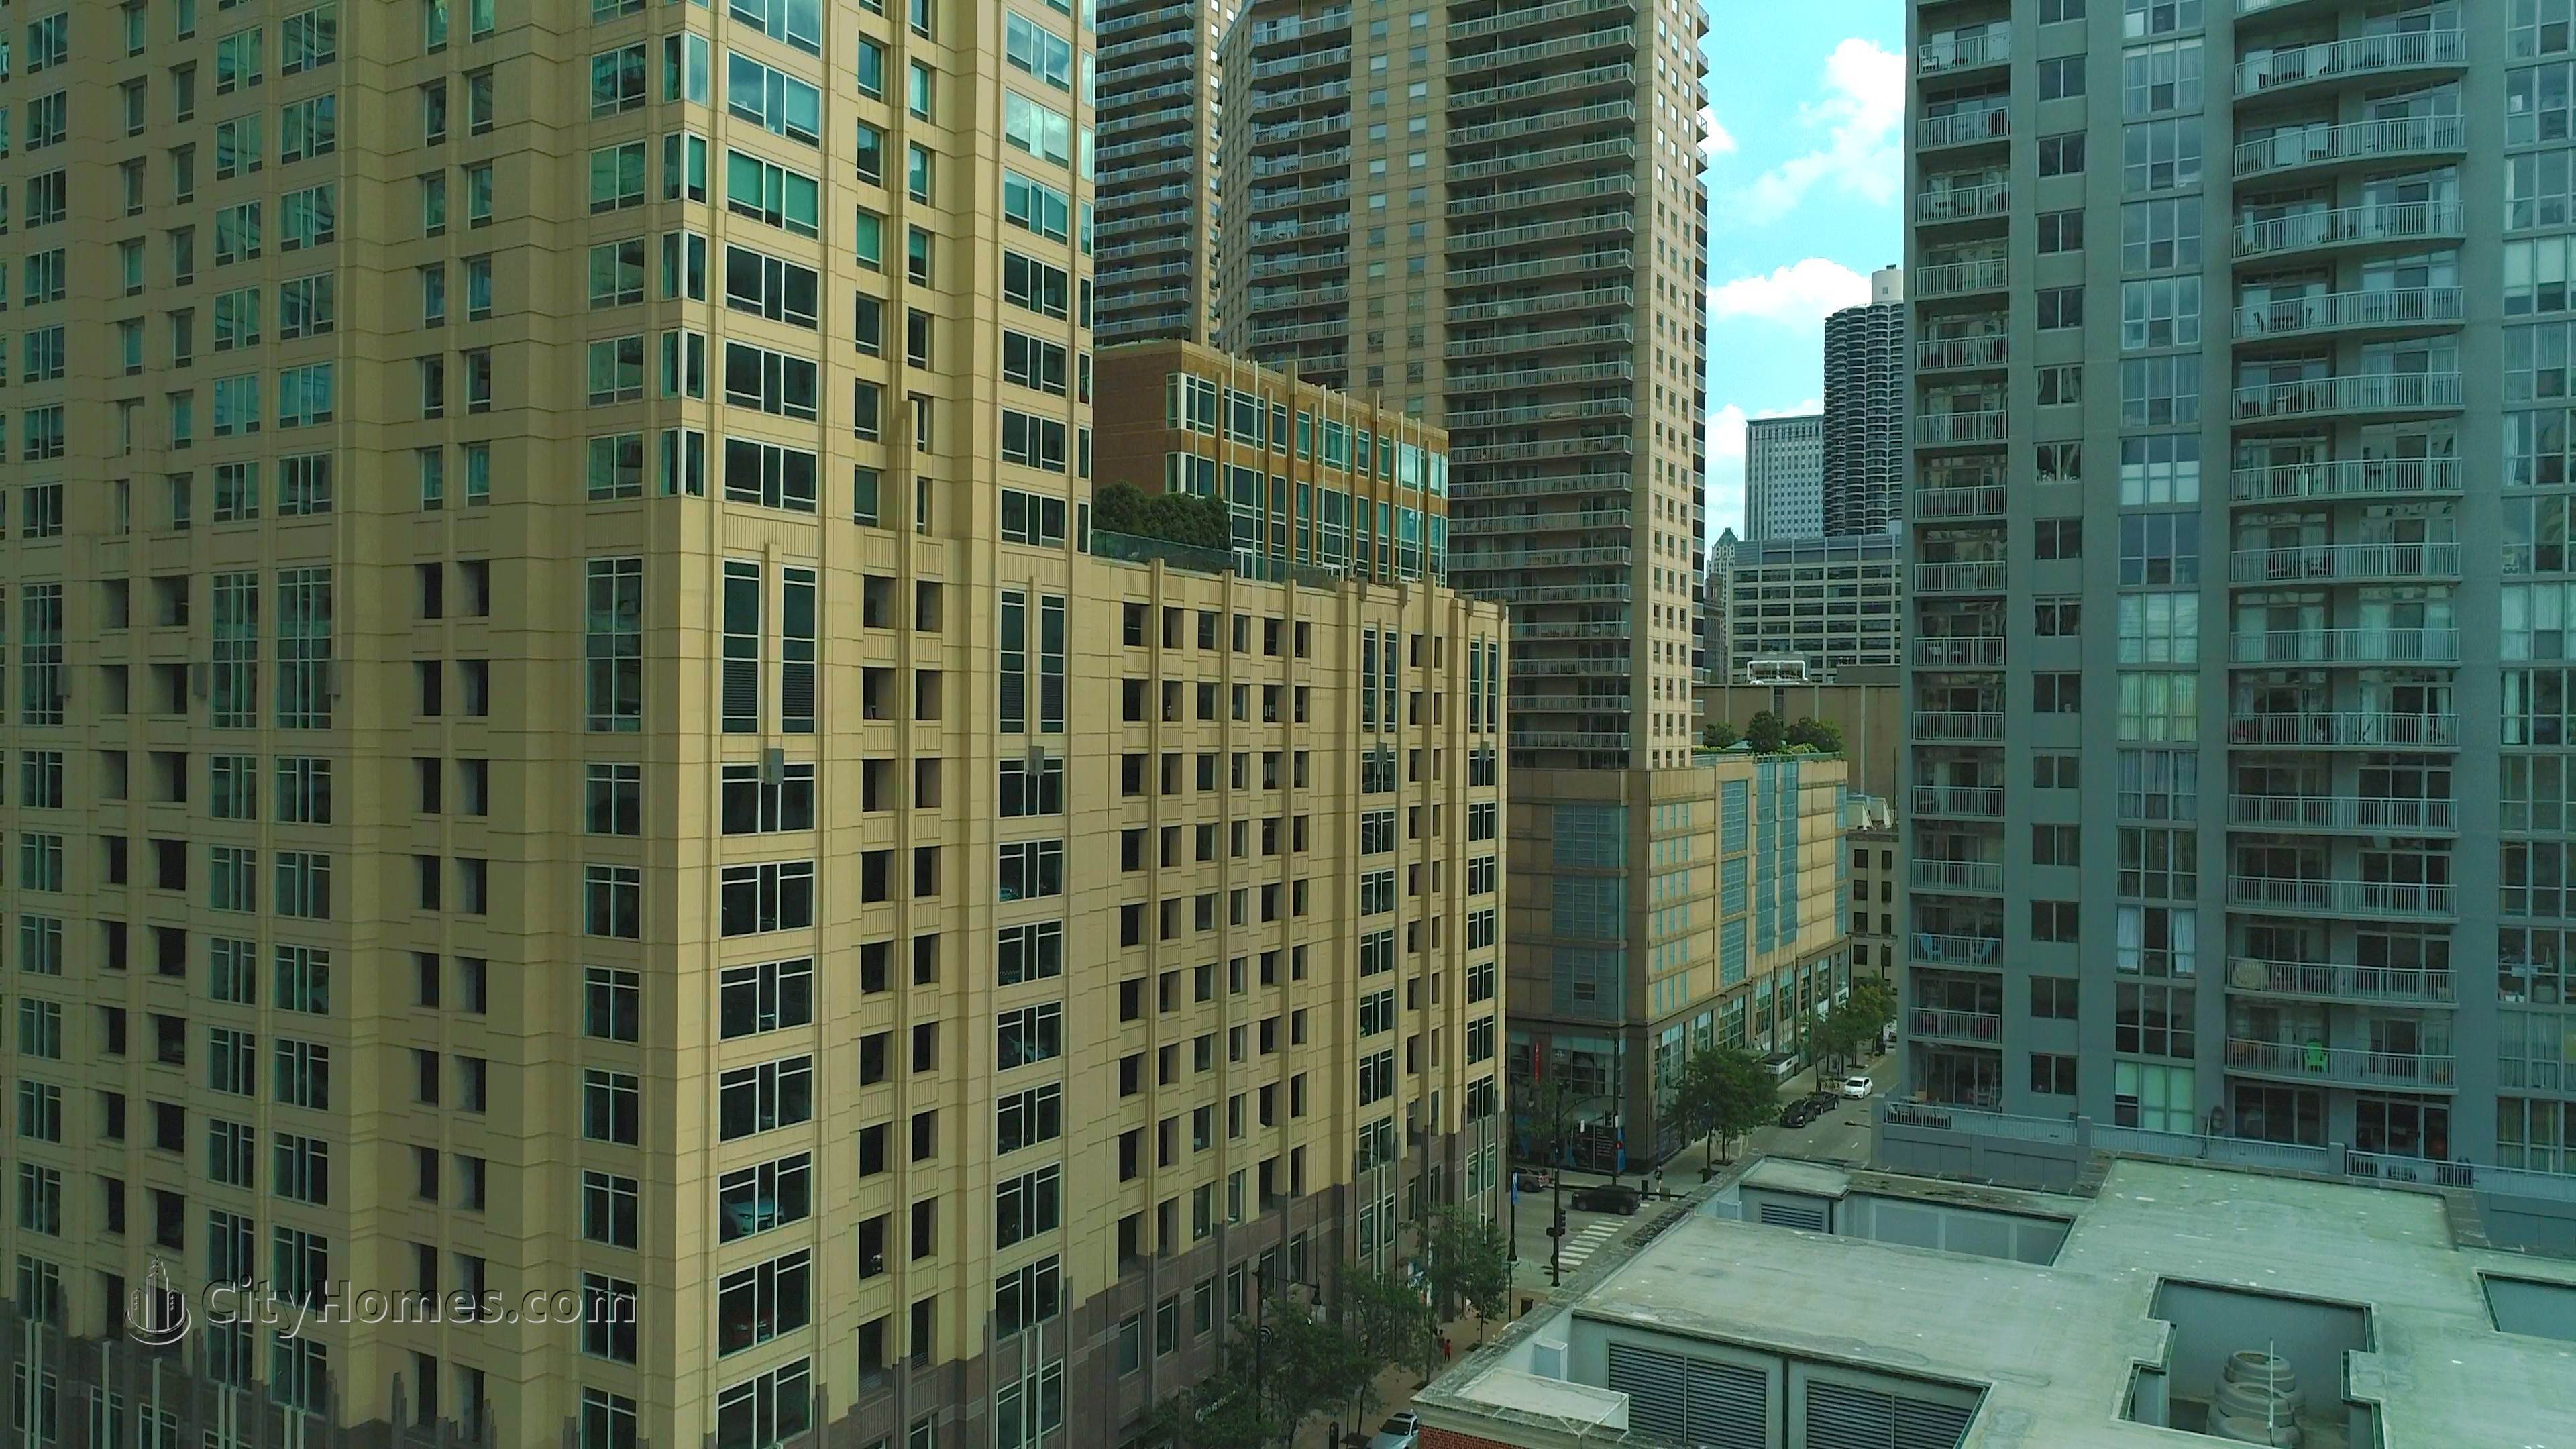 Millennium Centre edificio a 33 W Ontario St, Central Chicago, Chicago, IL 60610